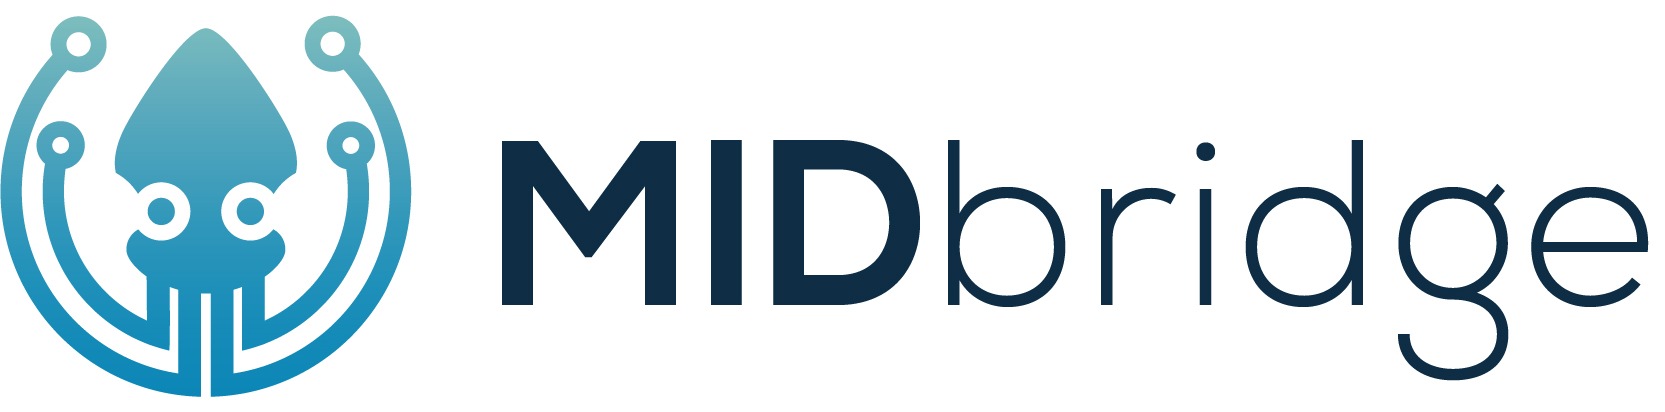 Thema Omnichannel / Entwickler und Anbieter MIDTechnologie entwickelt E-Commerce-Software MIDbridge